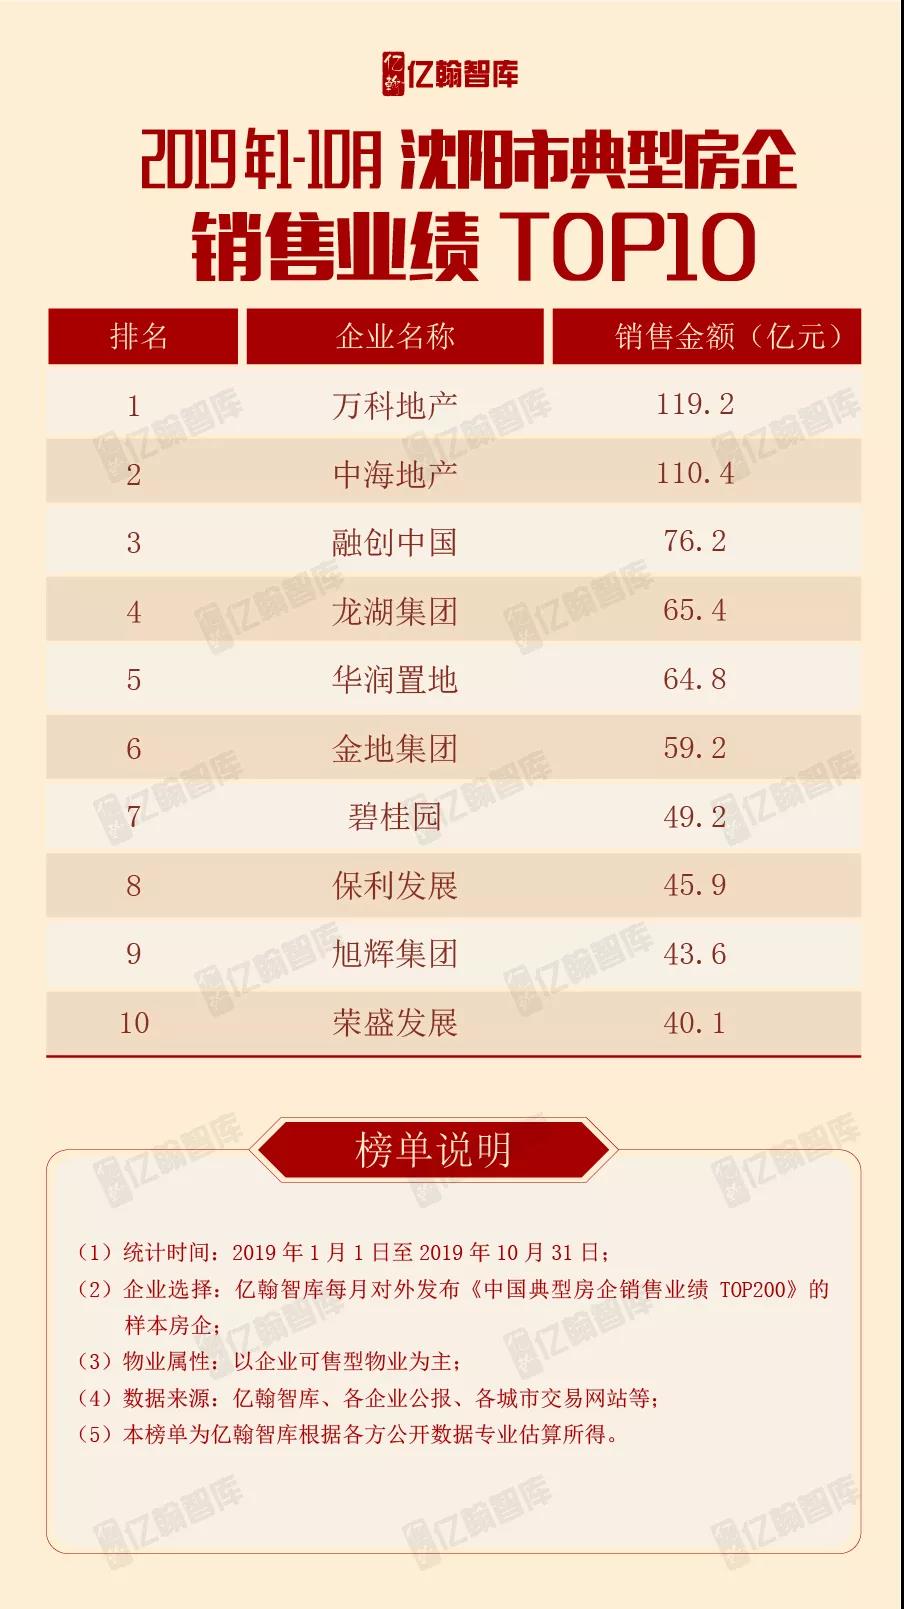 重磅 | 2019年1-10月沈阳市典型房企 销售业绩TOP10【第4期】-中国网地产